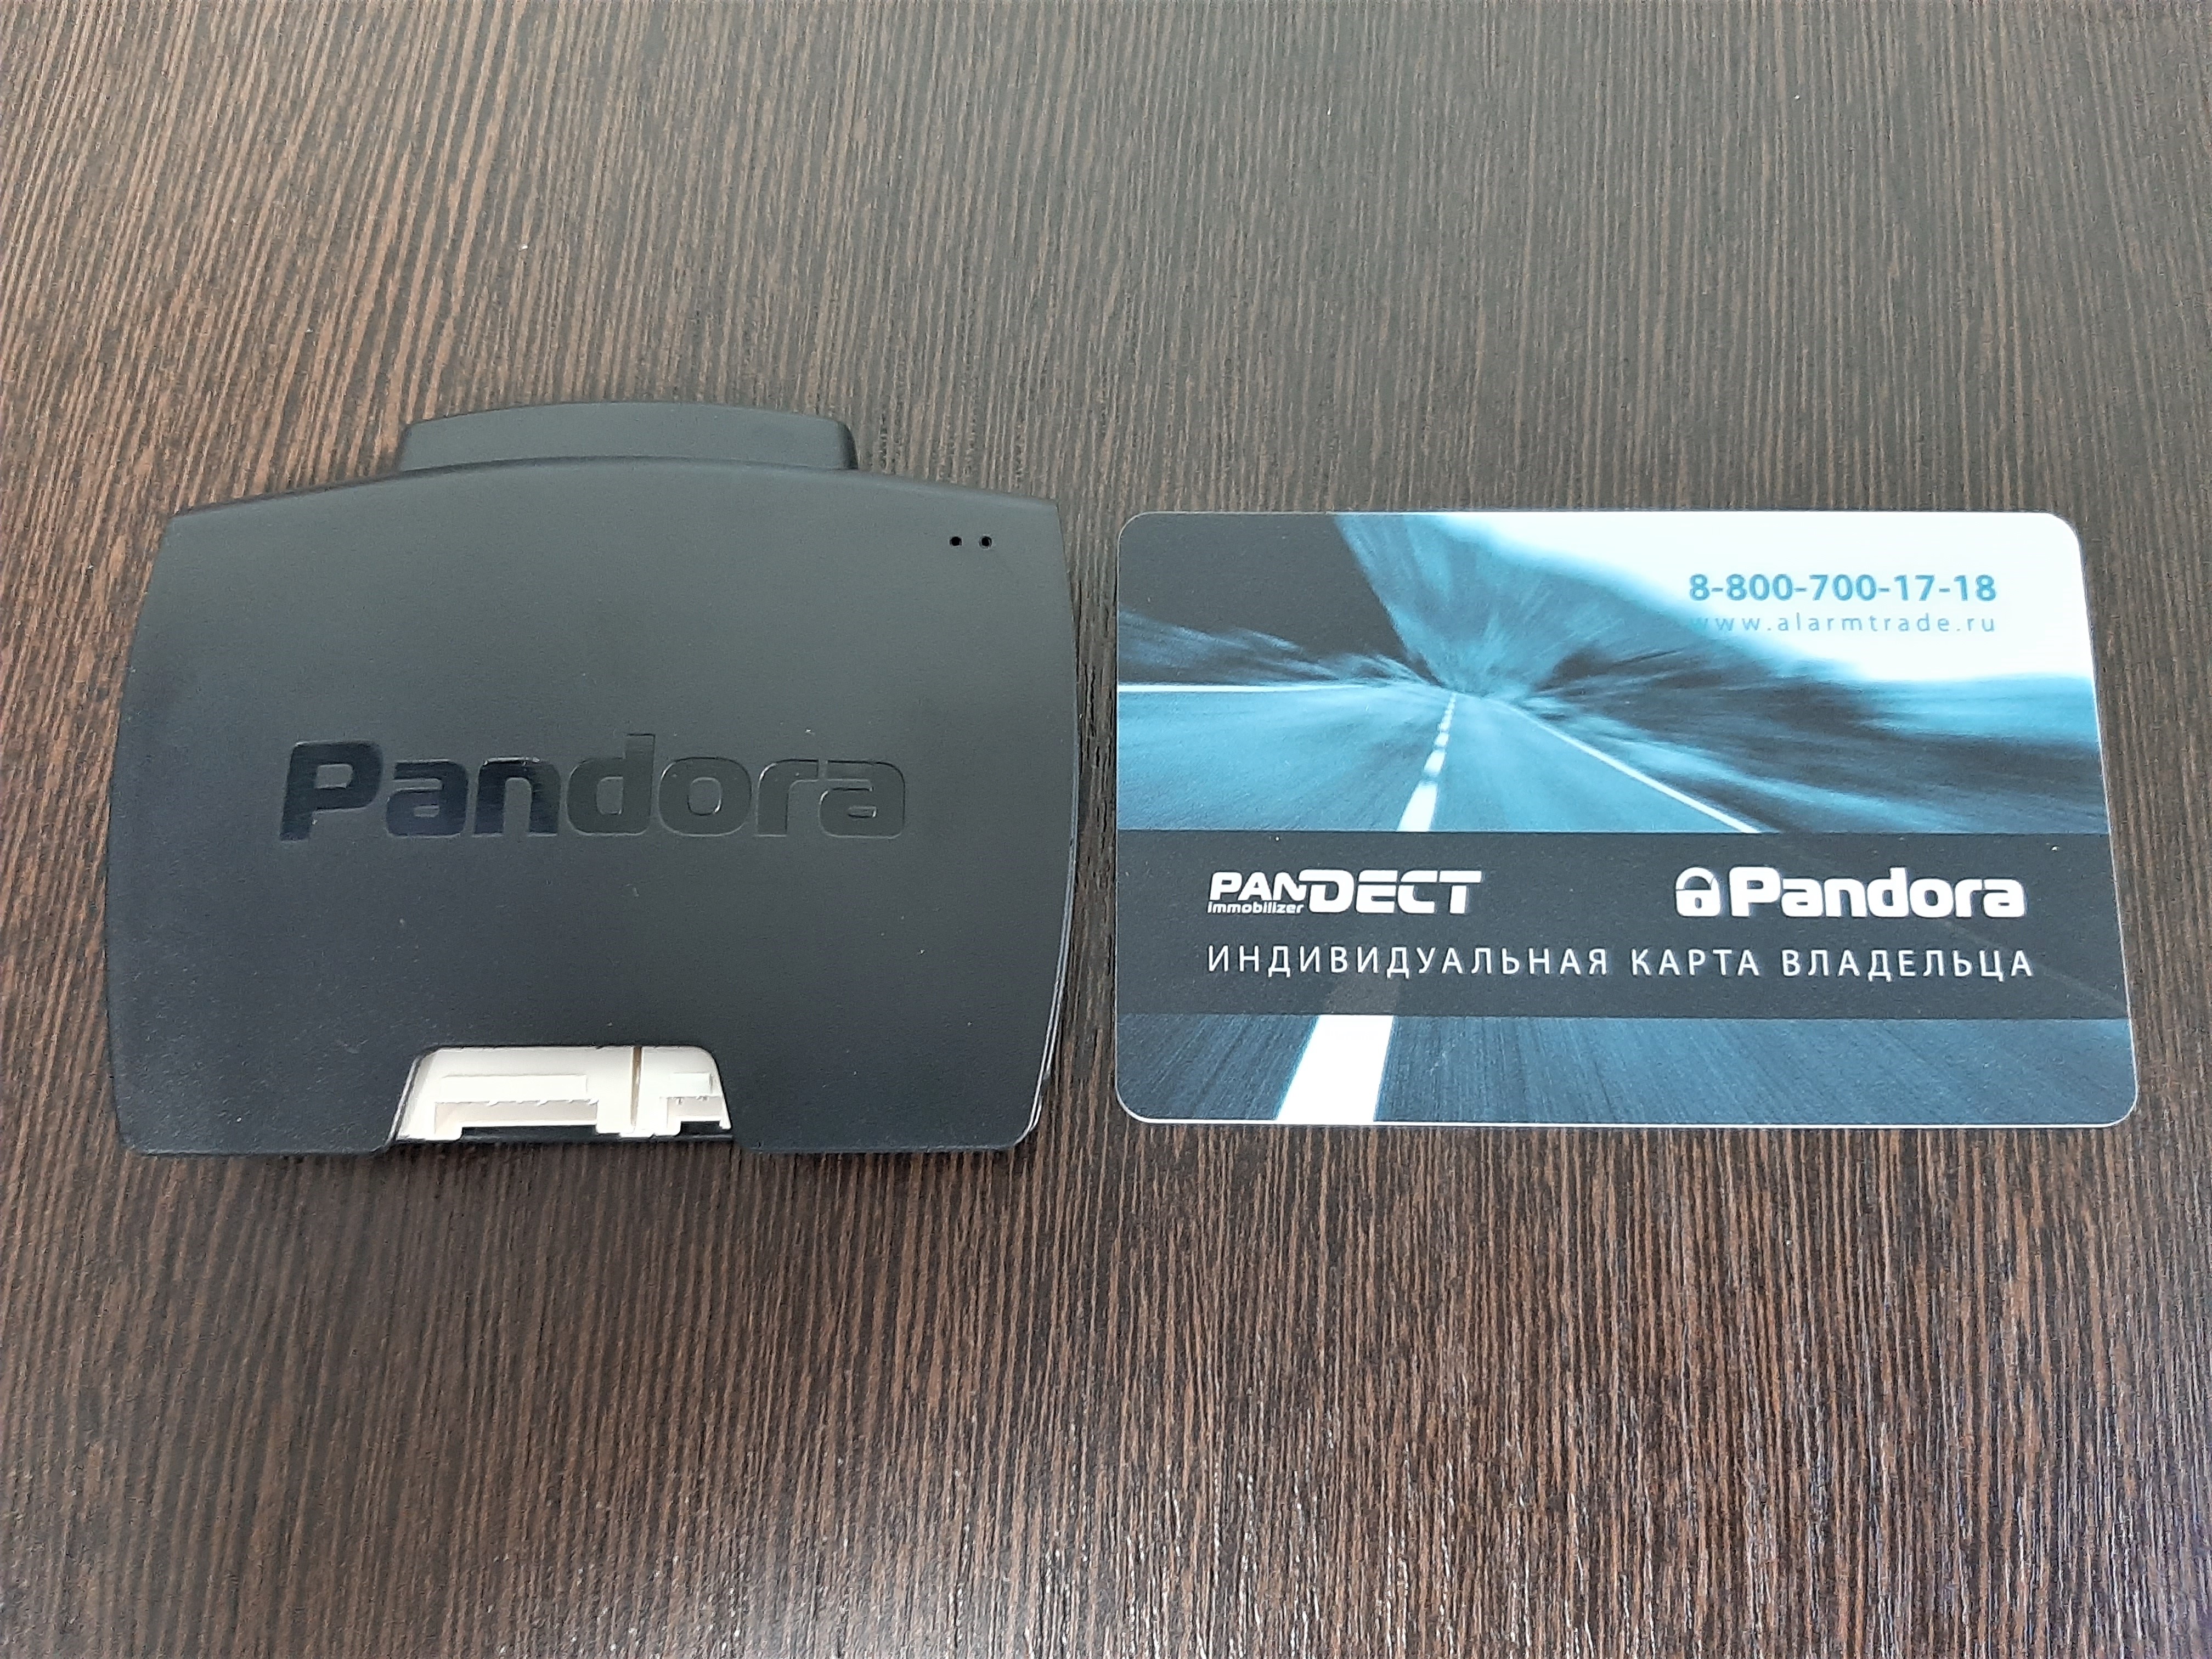 Pandora VX 4G gps